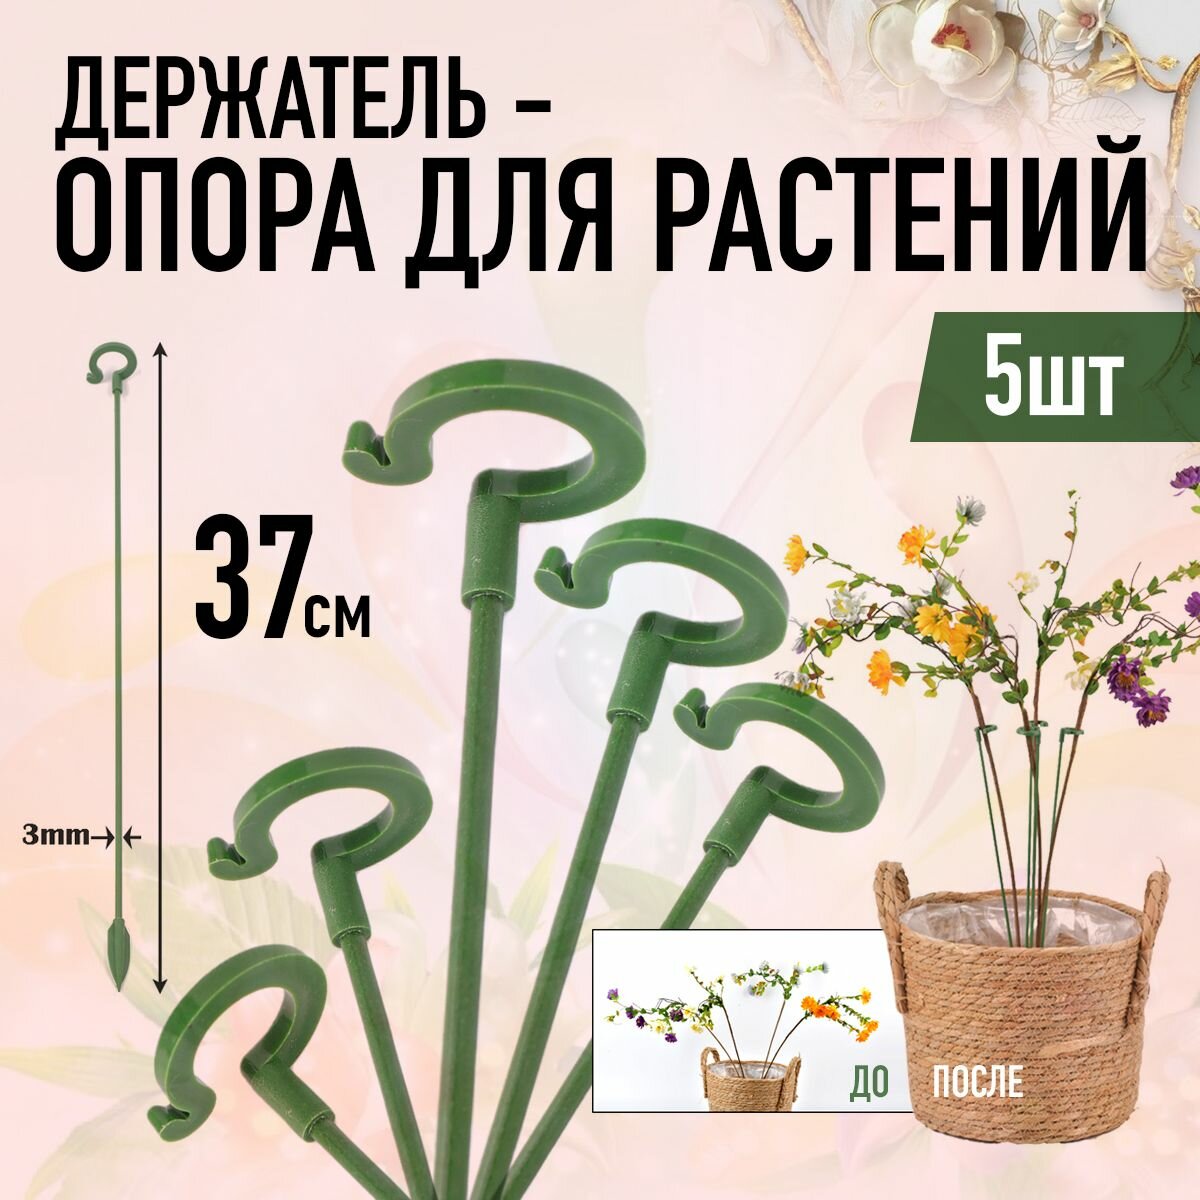 Держатель опора для растений 37 см (5шт, Зелёные)